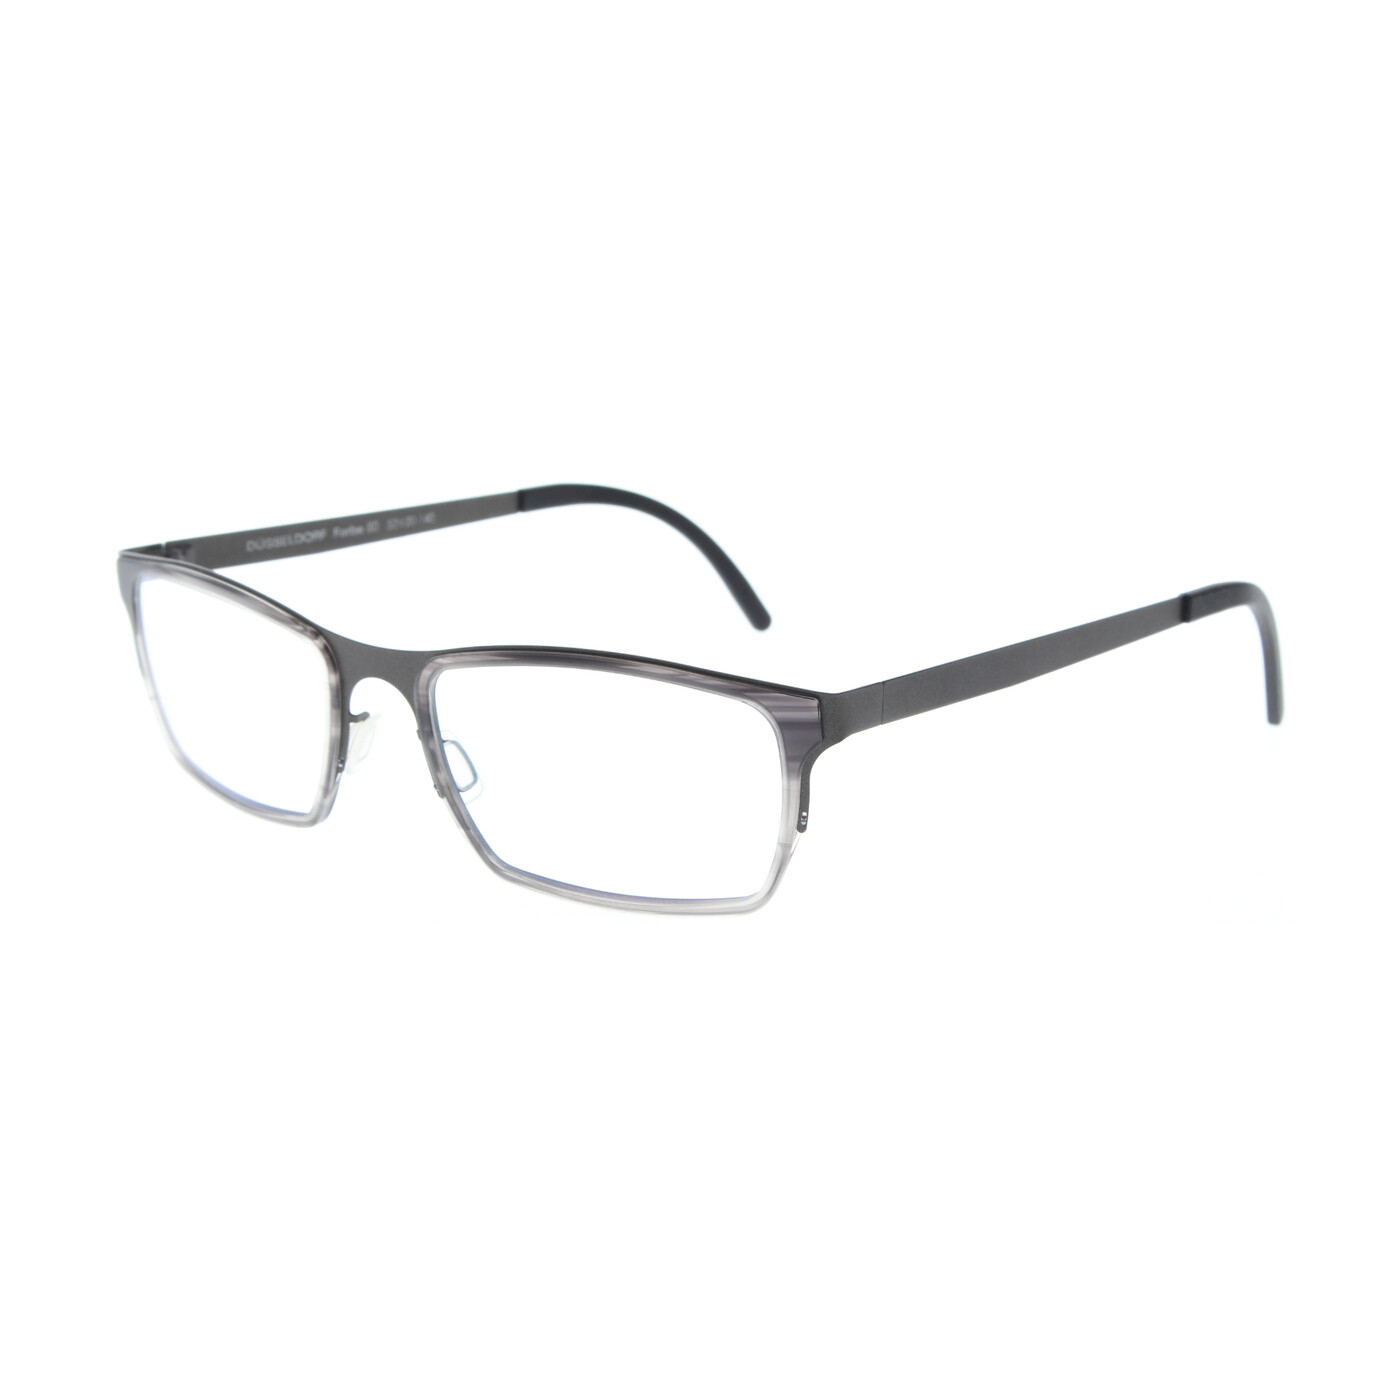 ALBTRAUF Herren Brillen kaufen im Online Shop von Nasenfahrrad24